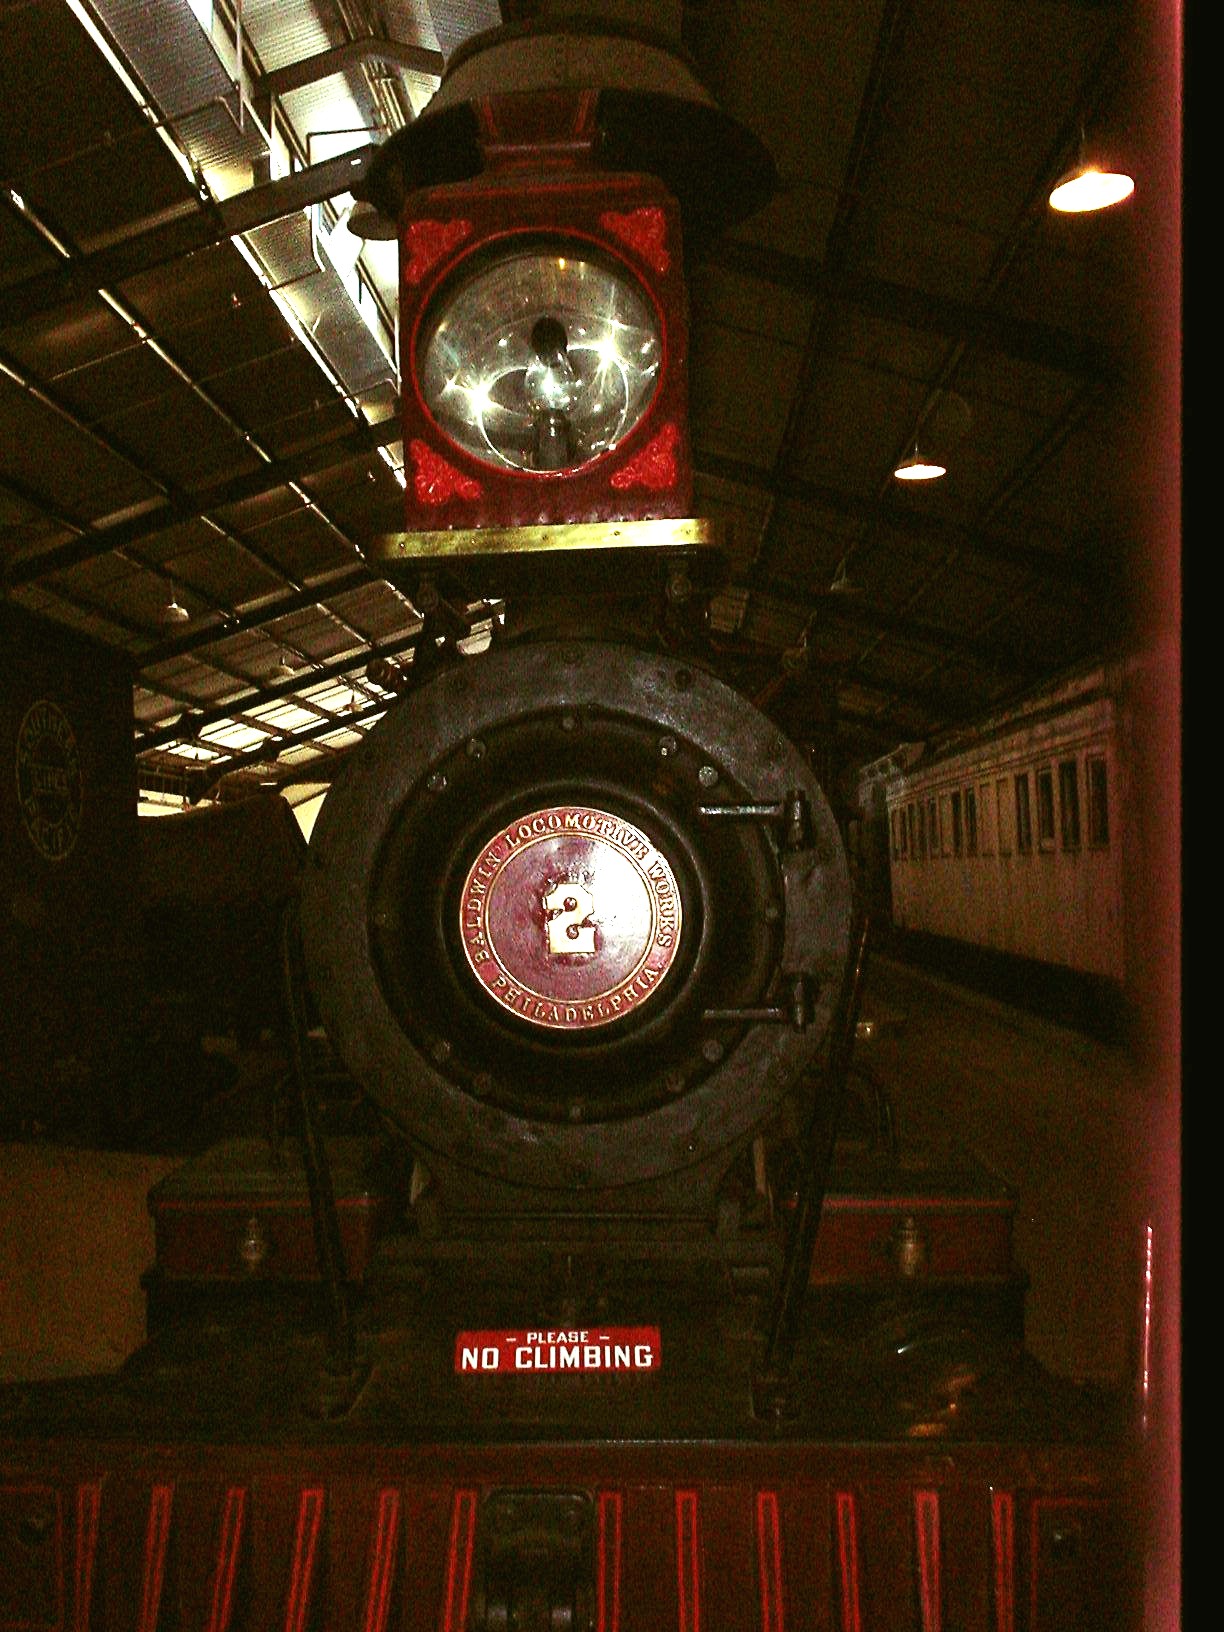 Orange Empire Railway Museum